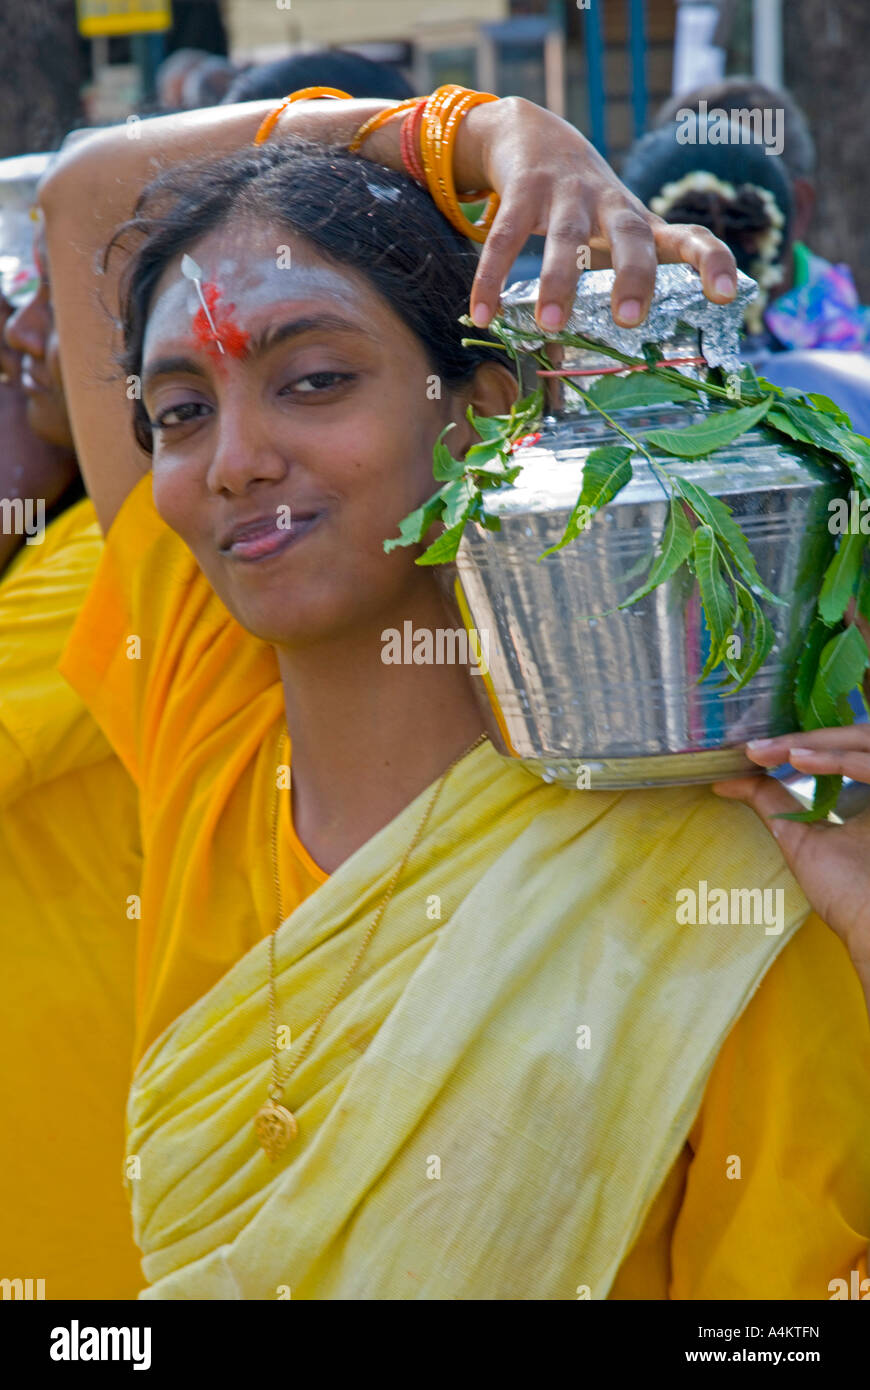 Anhänger des Lord Murugan tragen Töpfe mit Milch, während die malaysischen Indianer Thaipusam in Georgetown Penang feiern Stockfoto